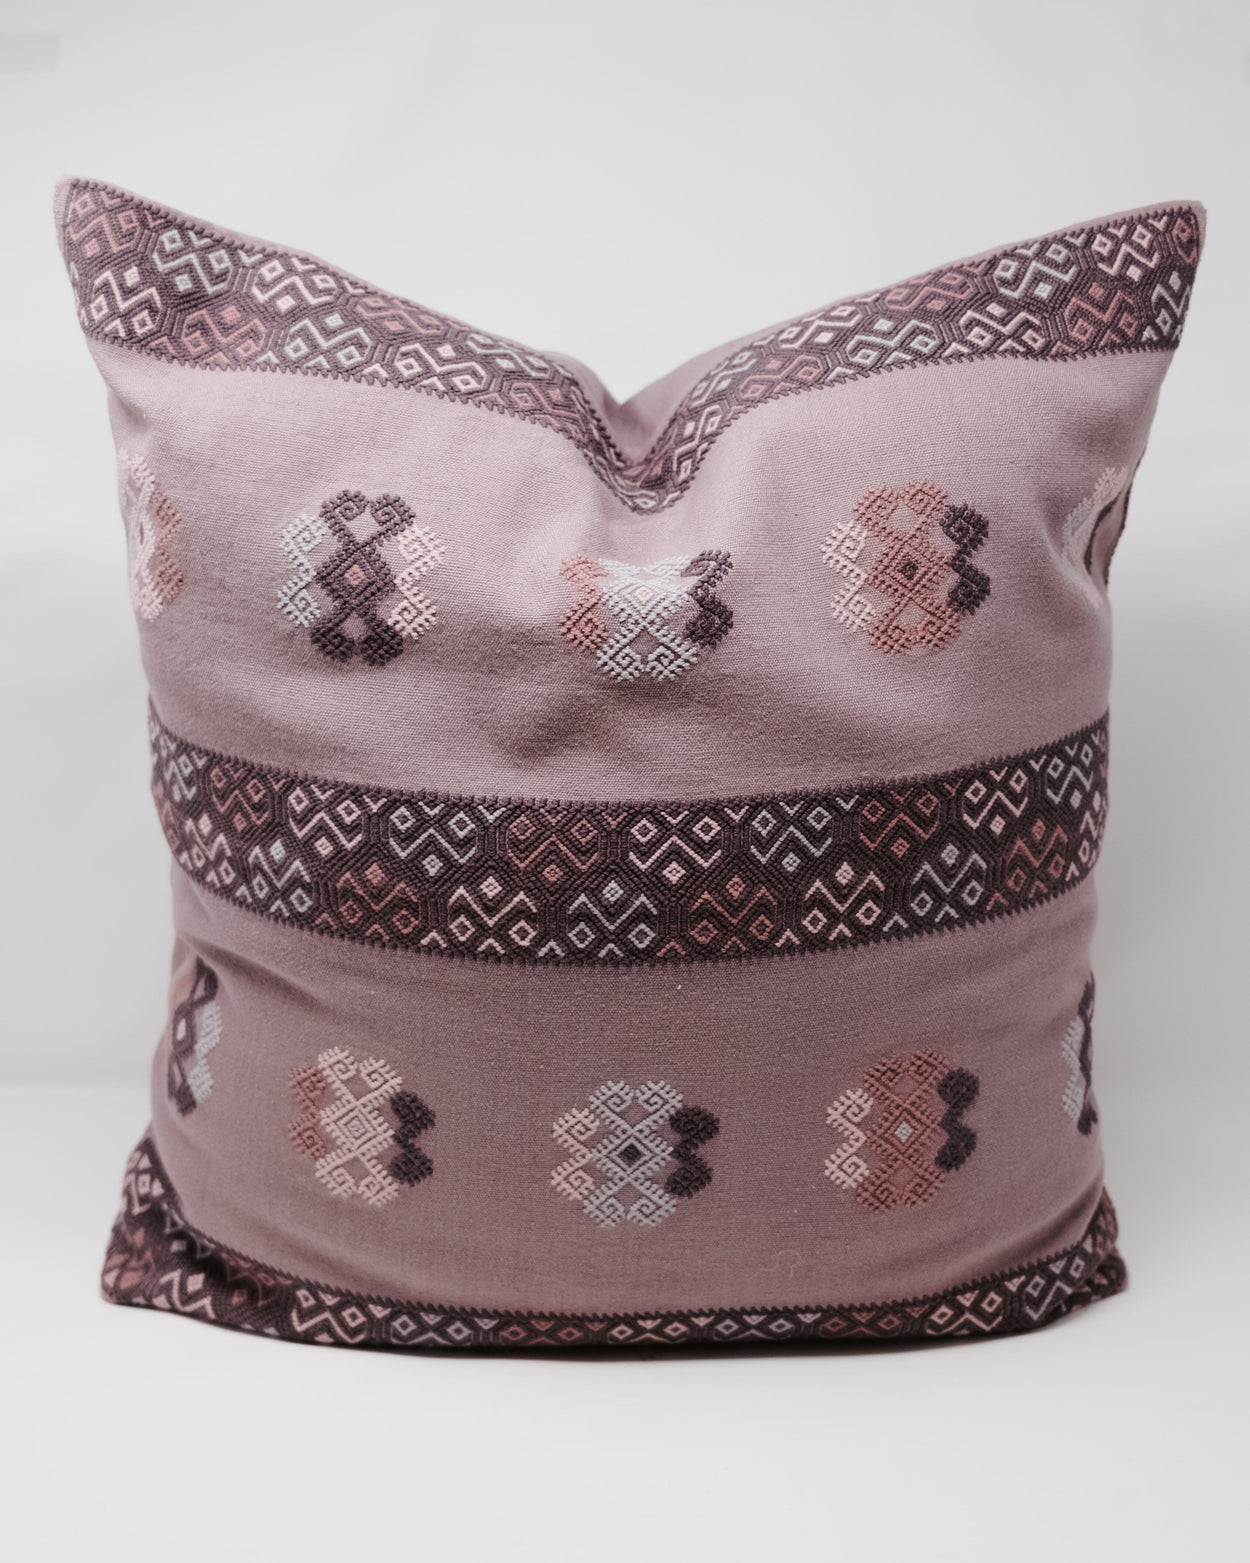 Diamond Multicolor Pillows Home, textile, Pillow Covers Sna Jolobil Pink Mauve Purple Bands 